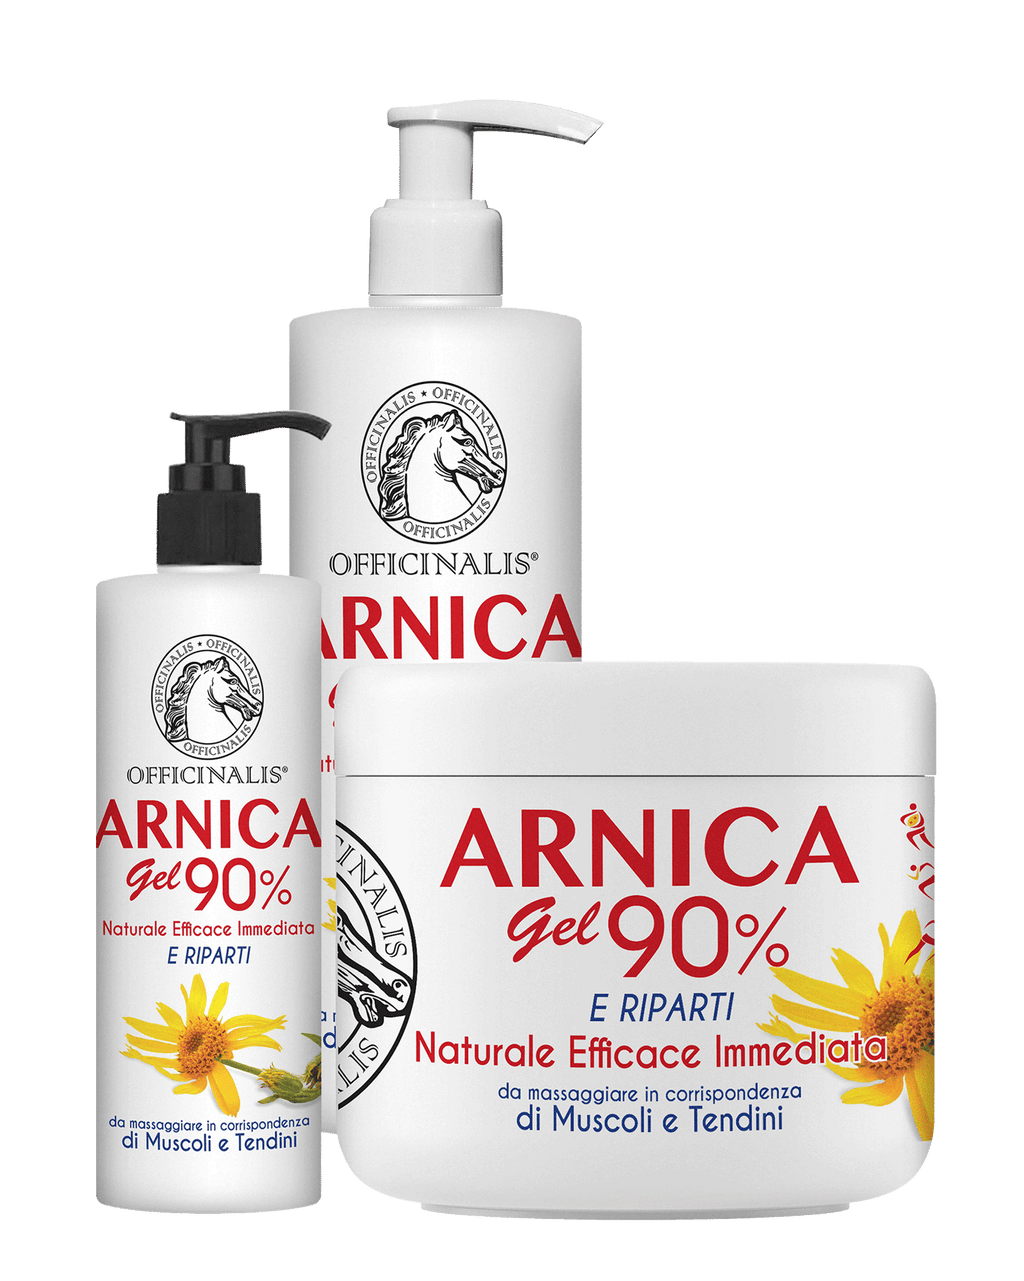 Officinalis Arnica Gel 90% - Proprietà ed utilizzo – Officinalis - Prodotti  naturali estratti da piante officinali